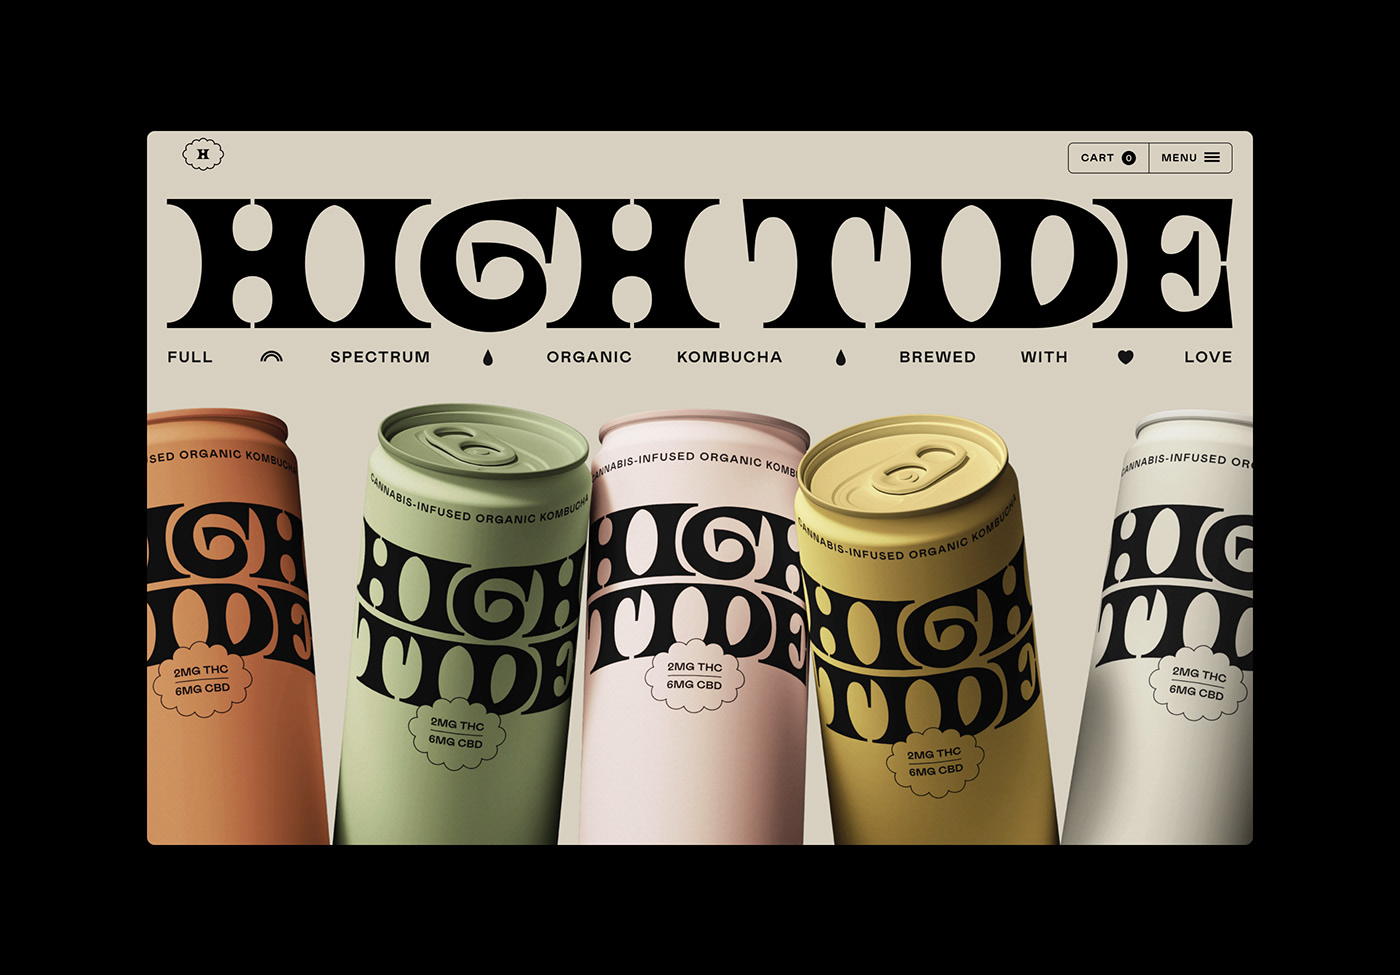 欣赏复古风格的High Tide饮料品牌设计,复古风格饮料包装设计。